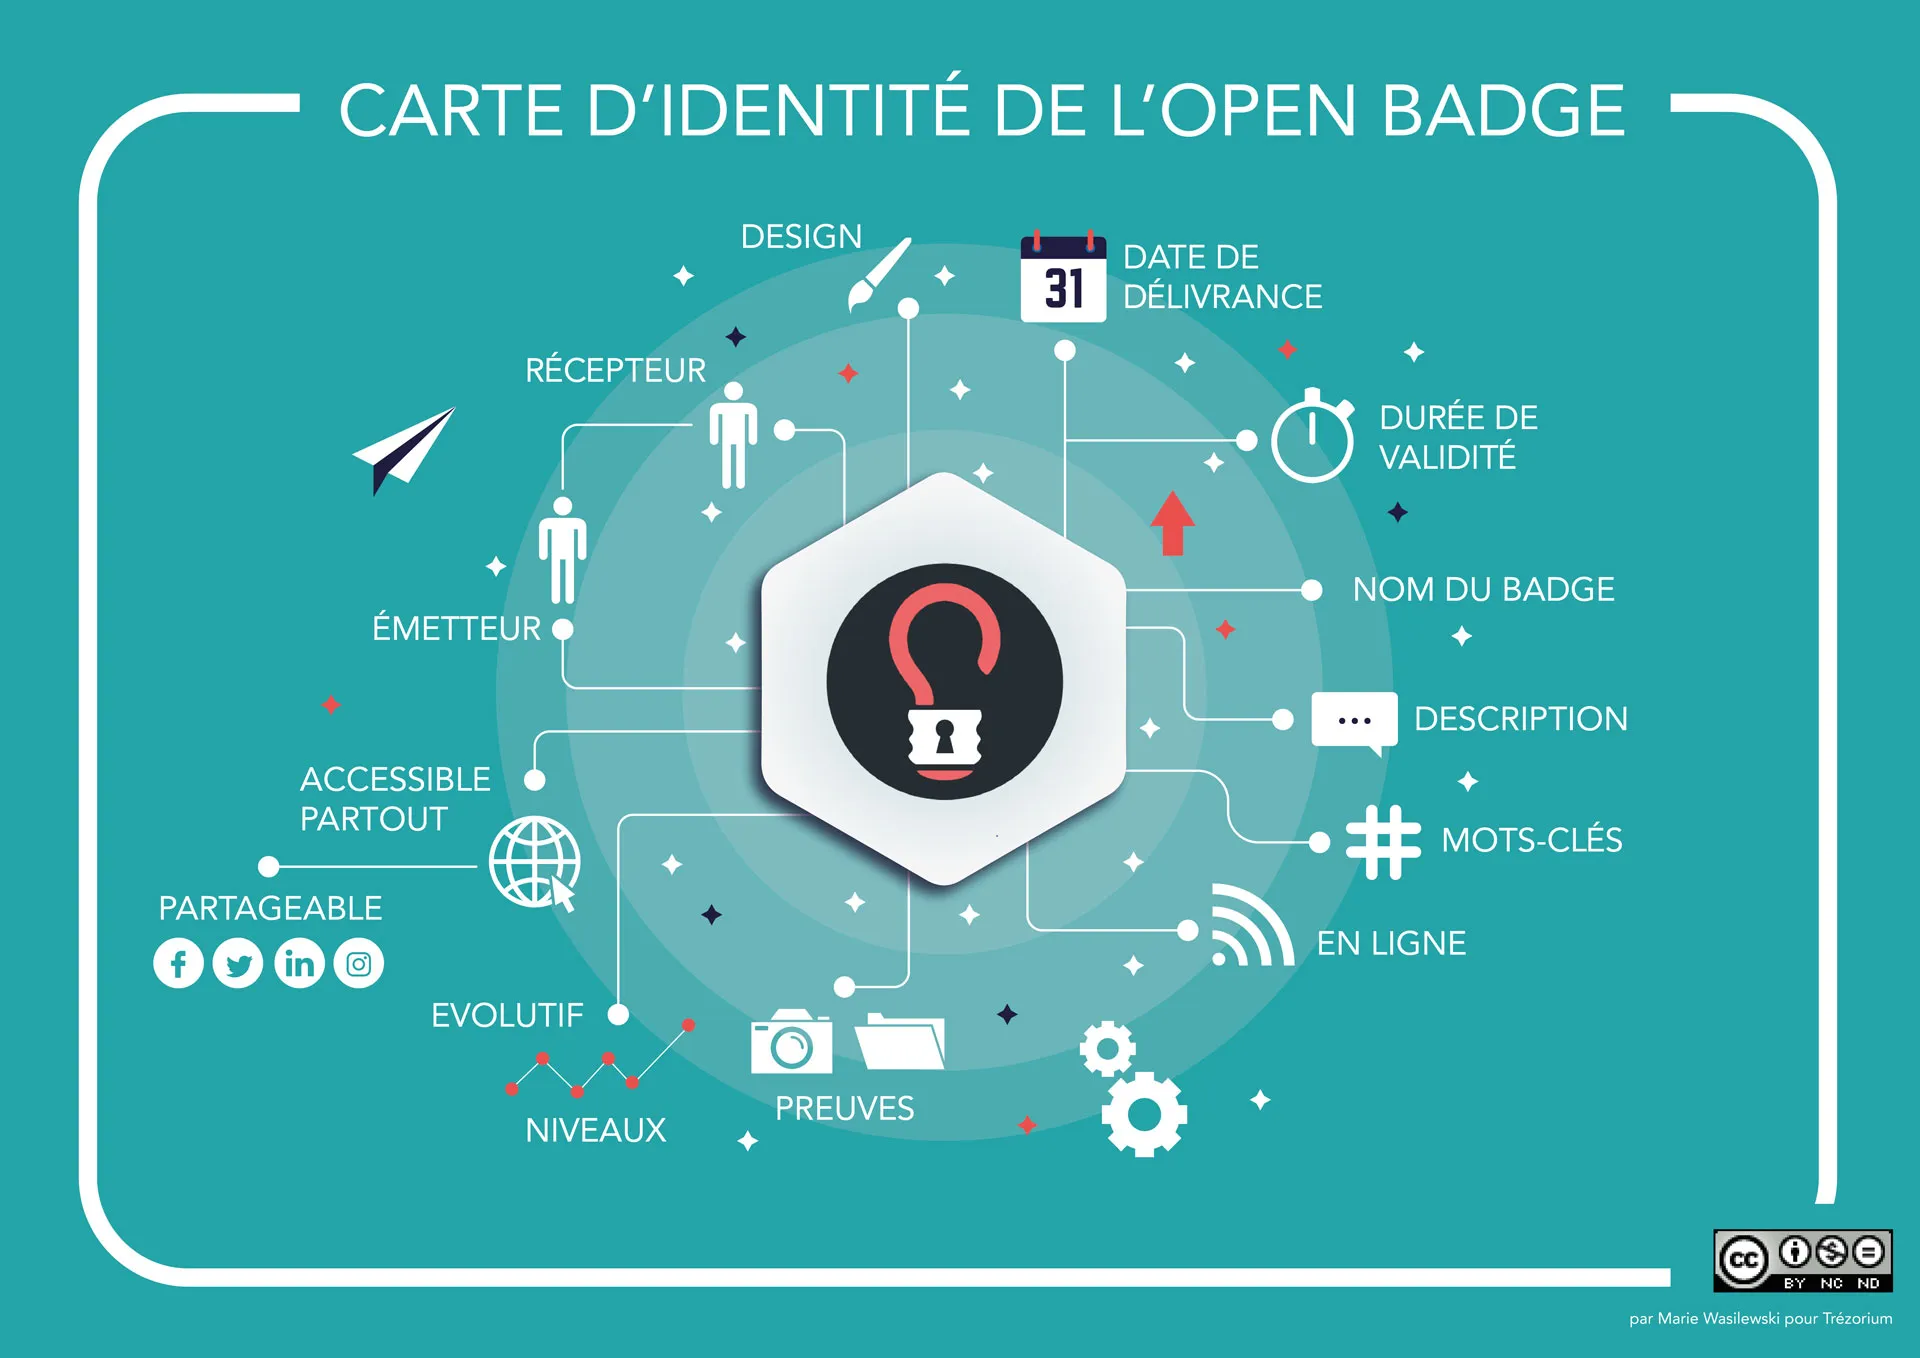 Home - Open Badge Info : Tout savoir sur les Open Badges